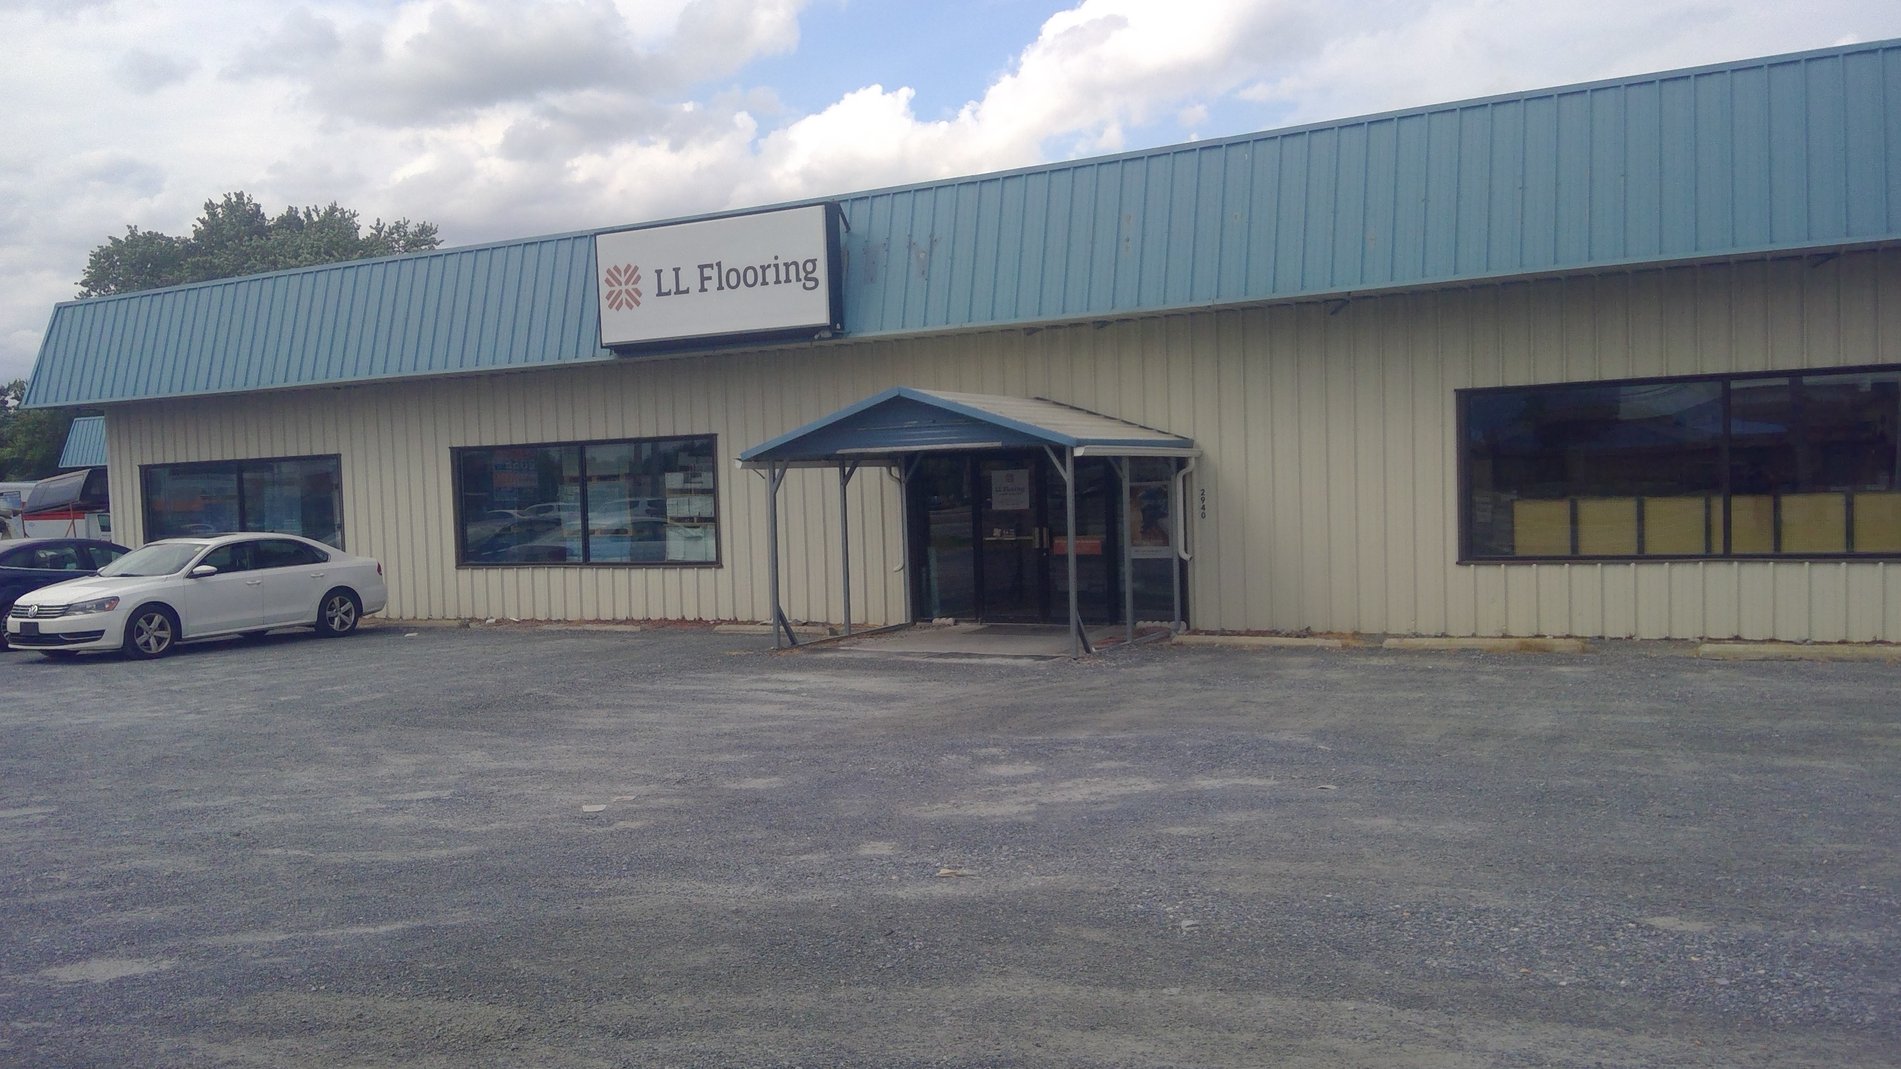 LL Flooring #1205 Dover | 2940 N. DuPont Highway | Storefront